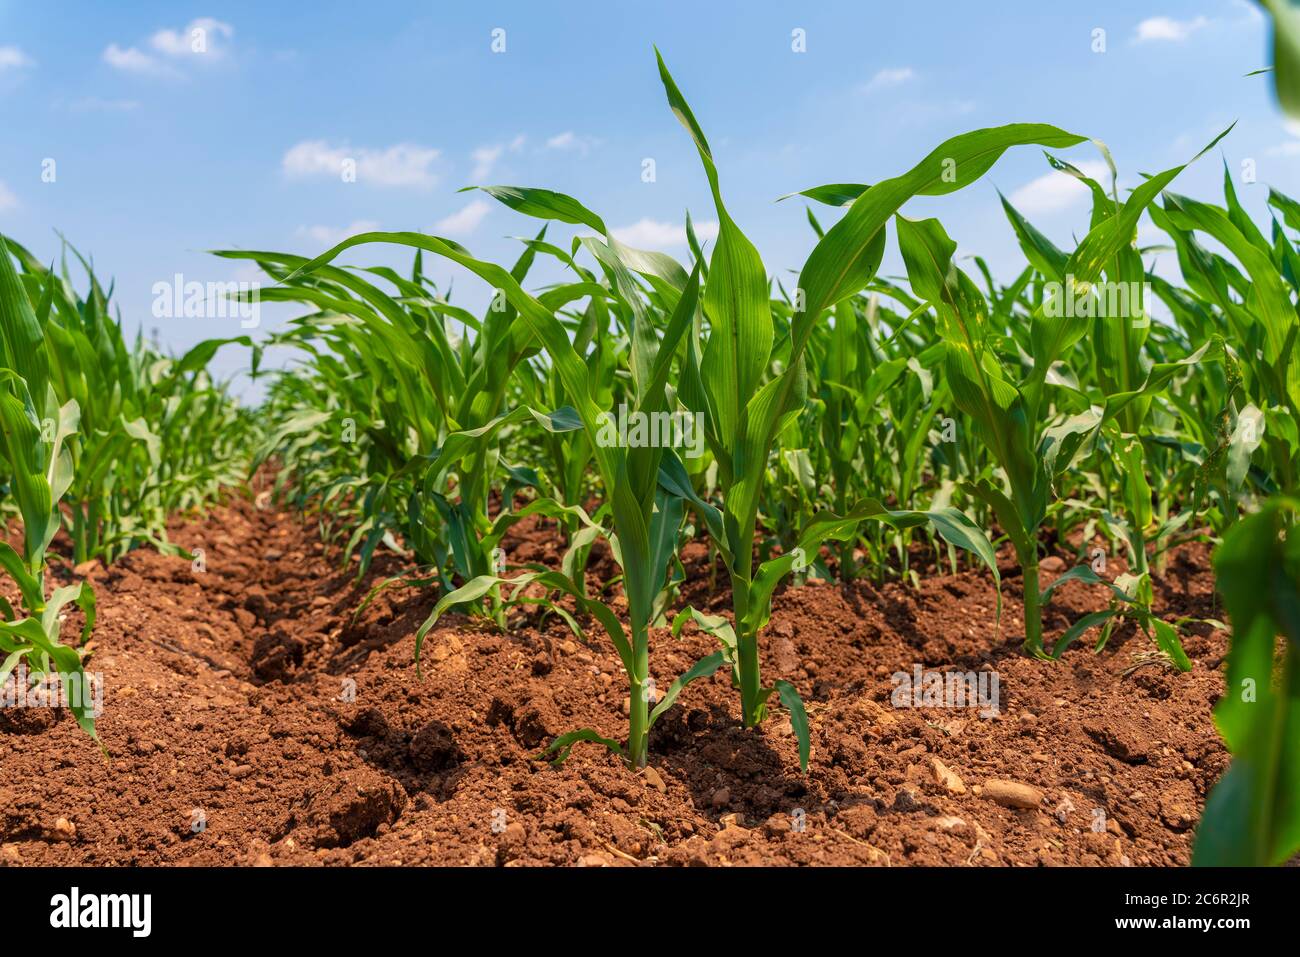 Piante di mais verde giovane su terreni agricoli - tiro ad angolo estremamente basso - vista dall'occhio del verme Foto Stock